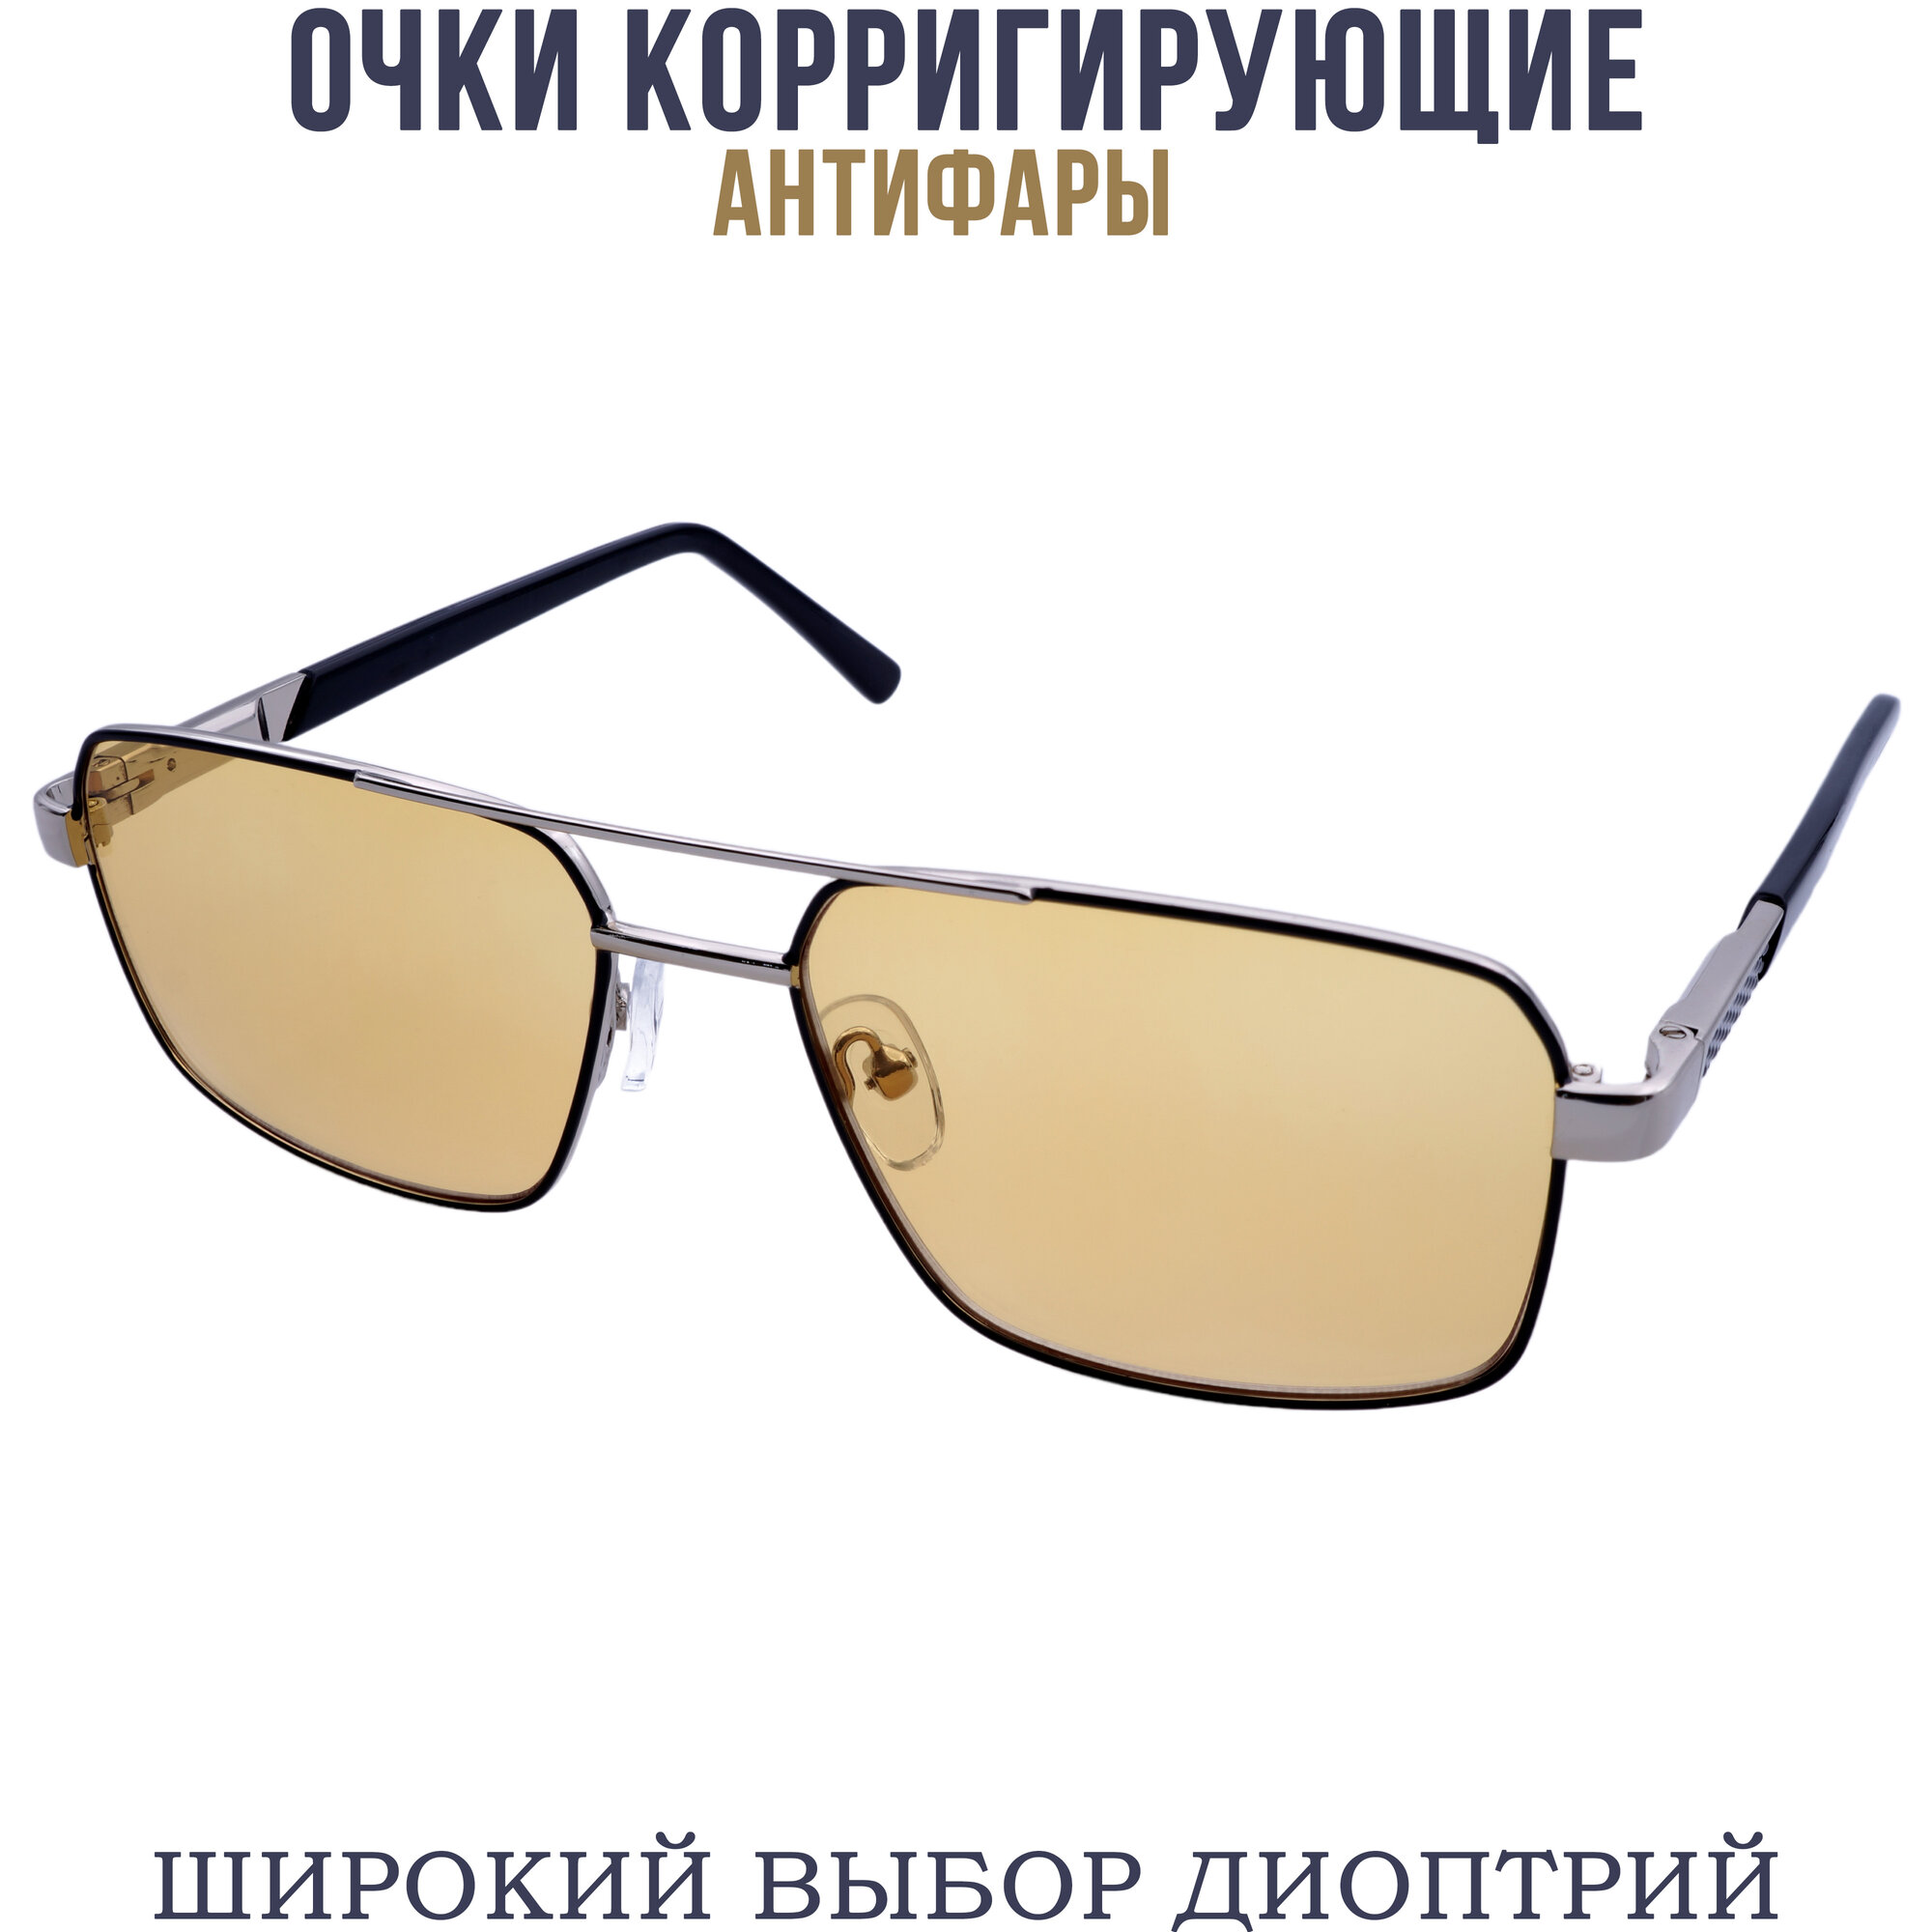 Готовые очки для зрения АНТИБЛИК с диоптриями pd62-64 7023